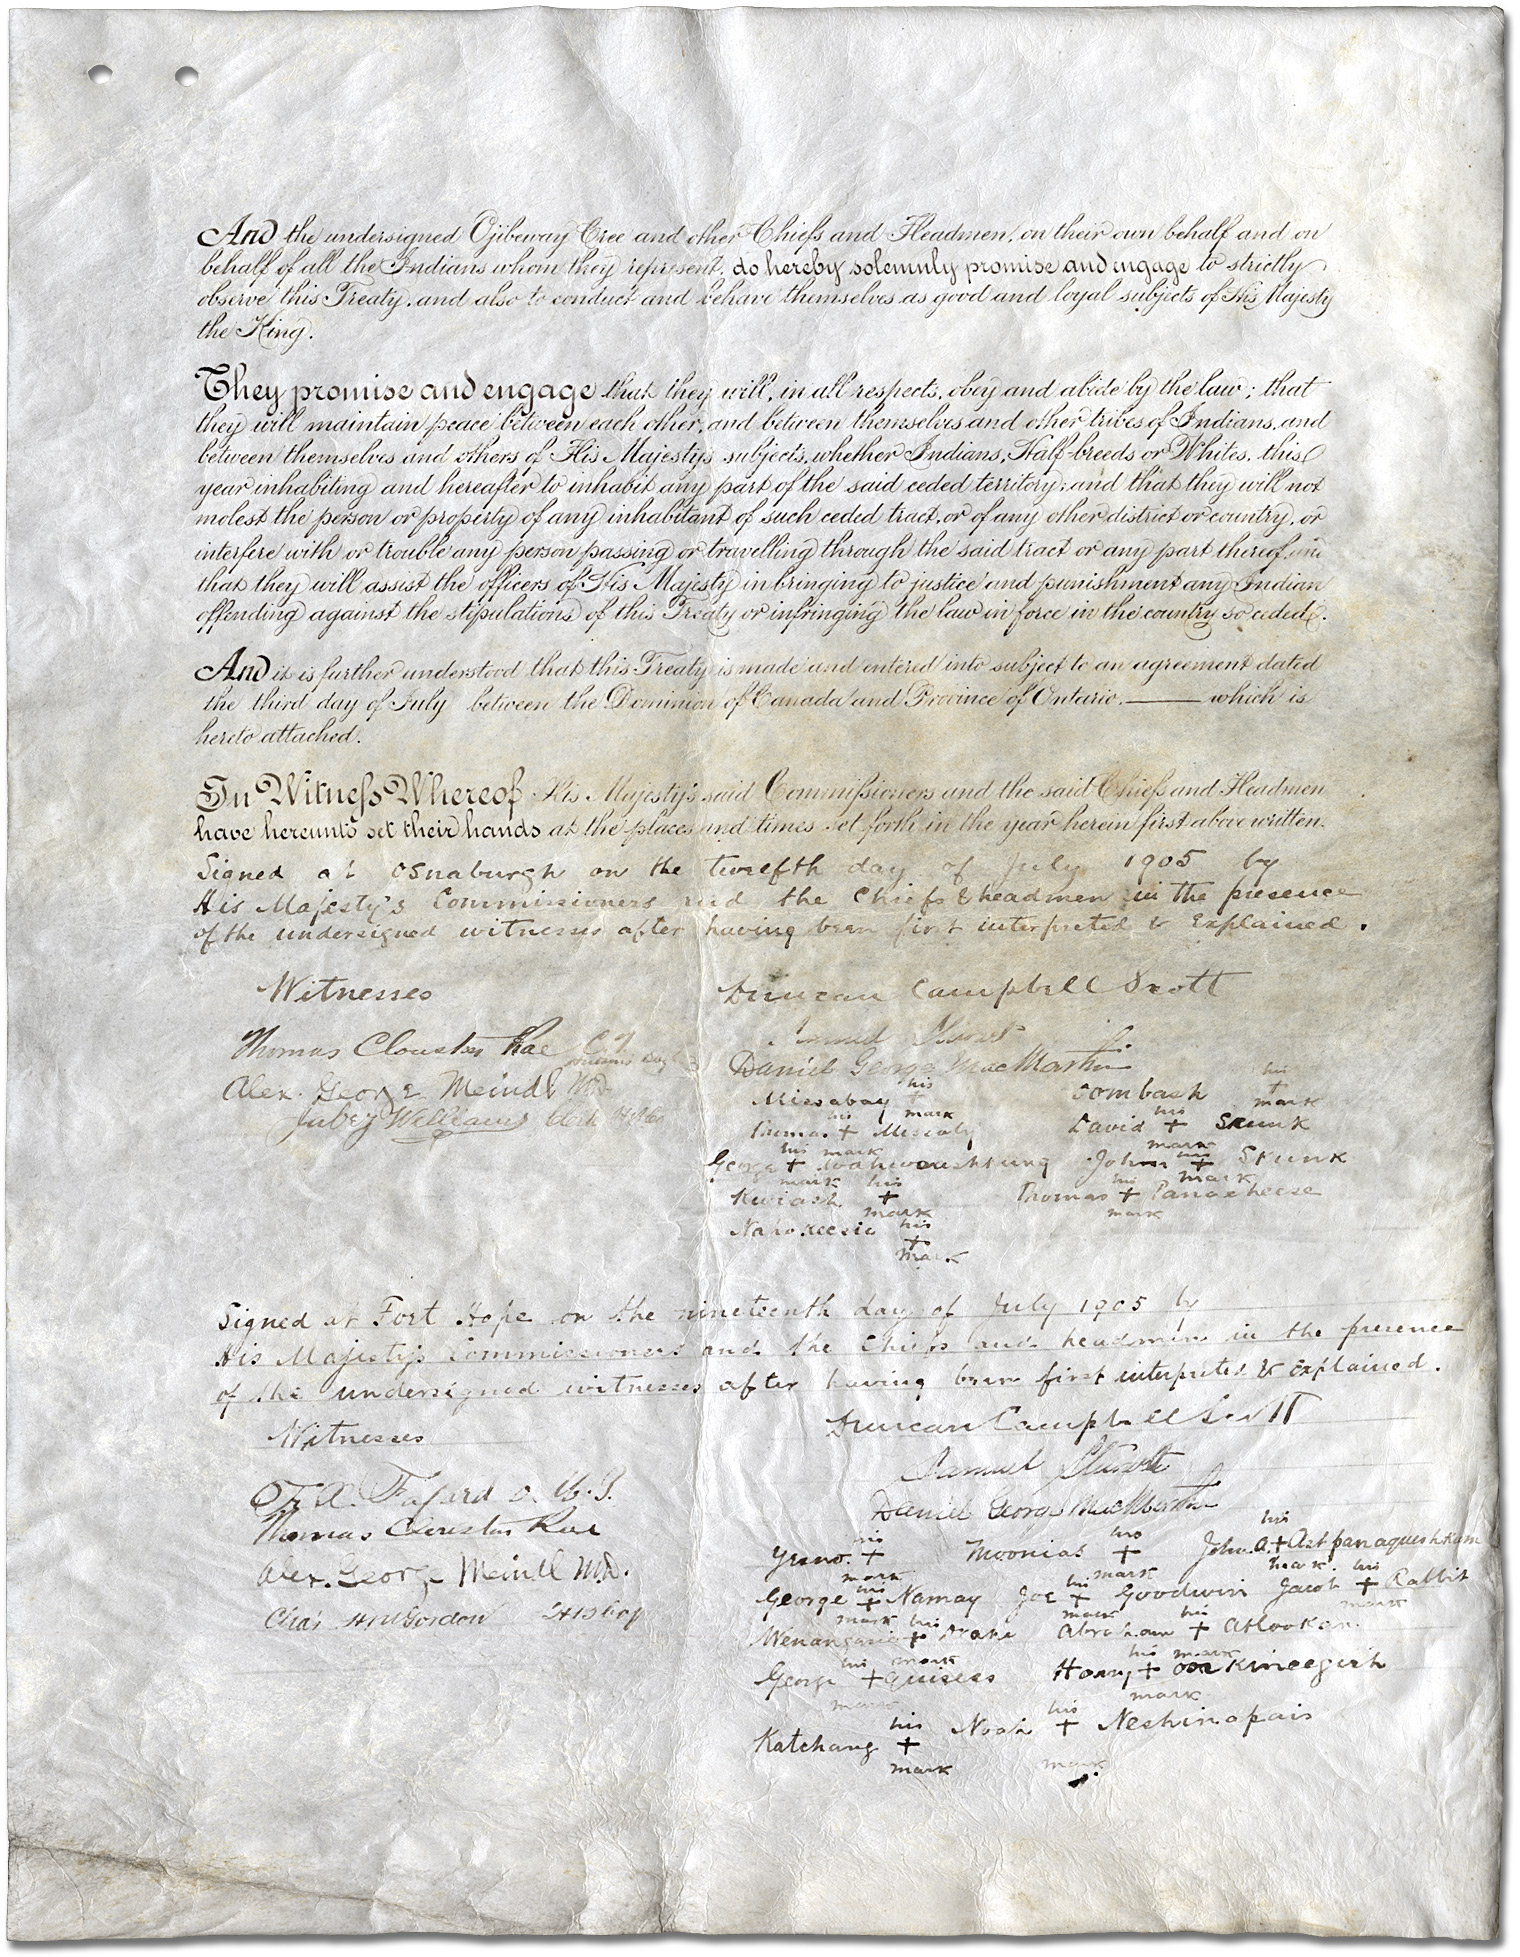 Le traité de la Baie James (traité no 9) [page 3]